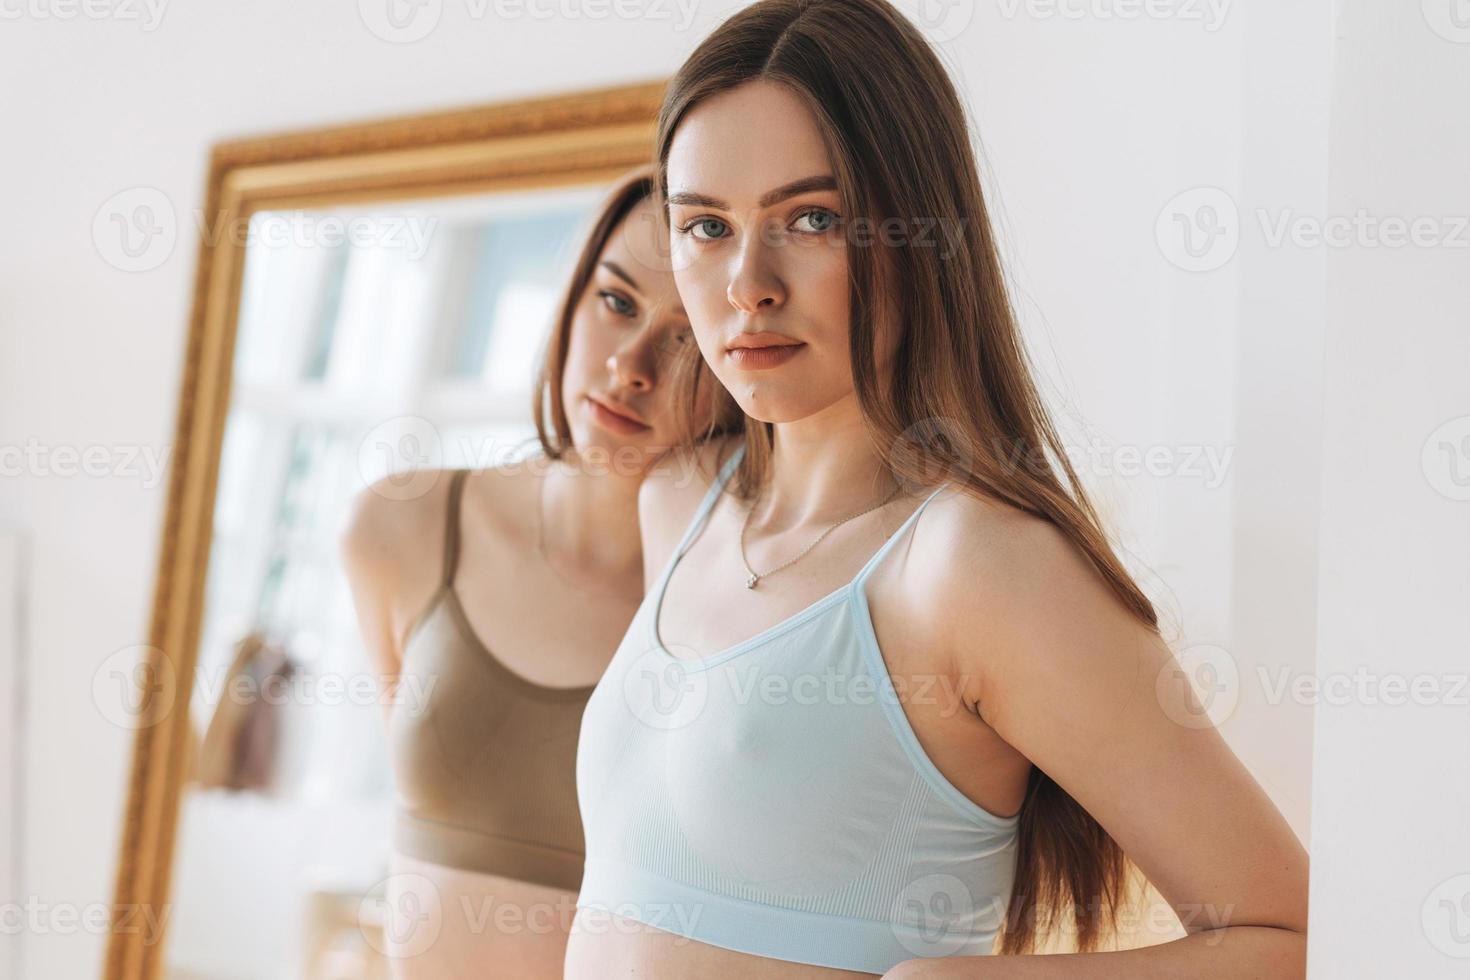 Fashion Beauty Models zwei Schwestern Zwillinge schöne Mädchen mit langen Haaren in sportlicher nahtloser gerippter Unterwäsche im hellen Studio foto